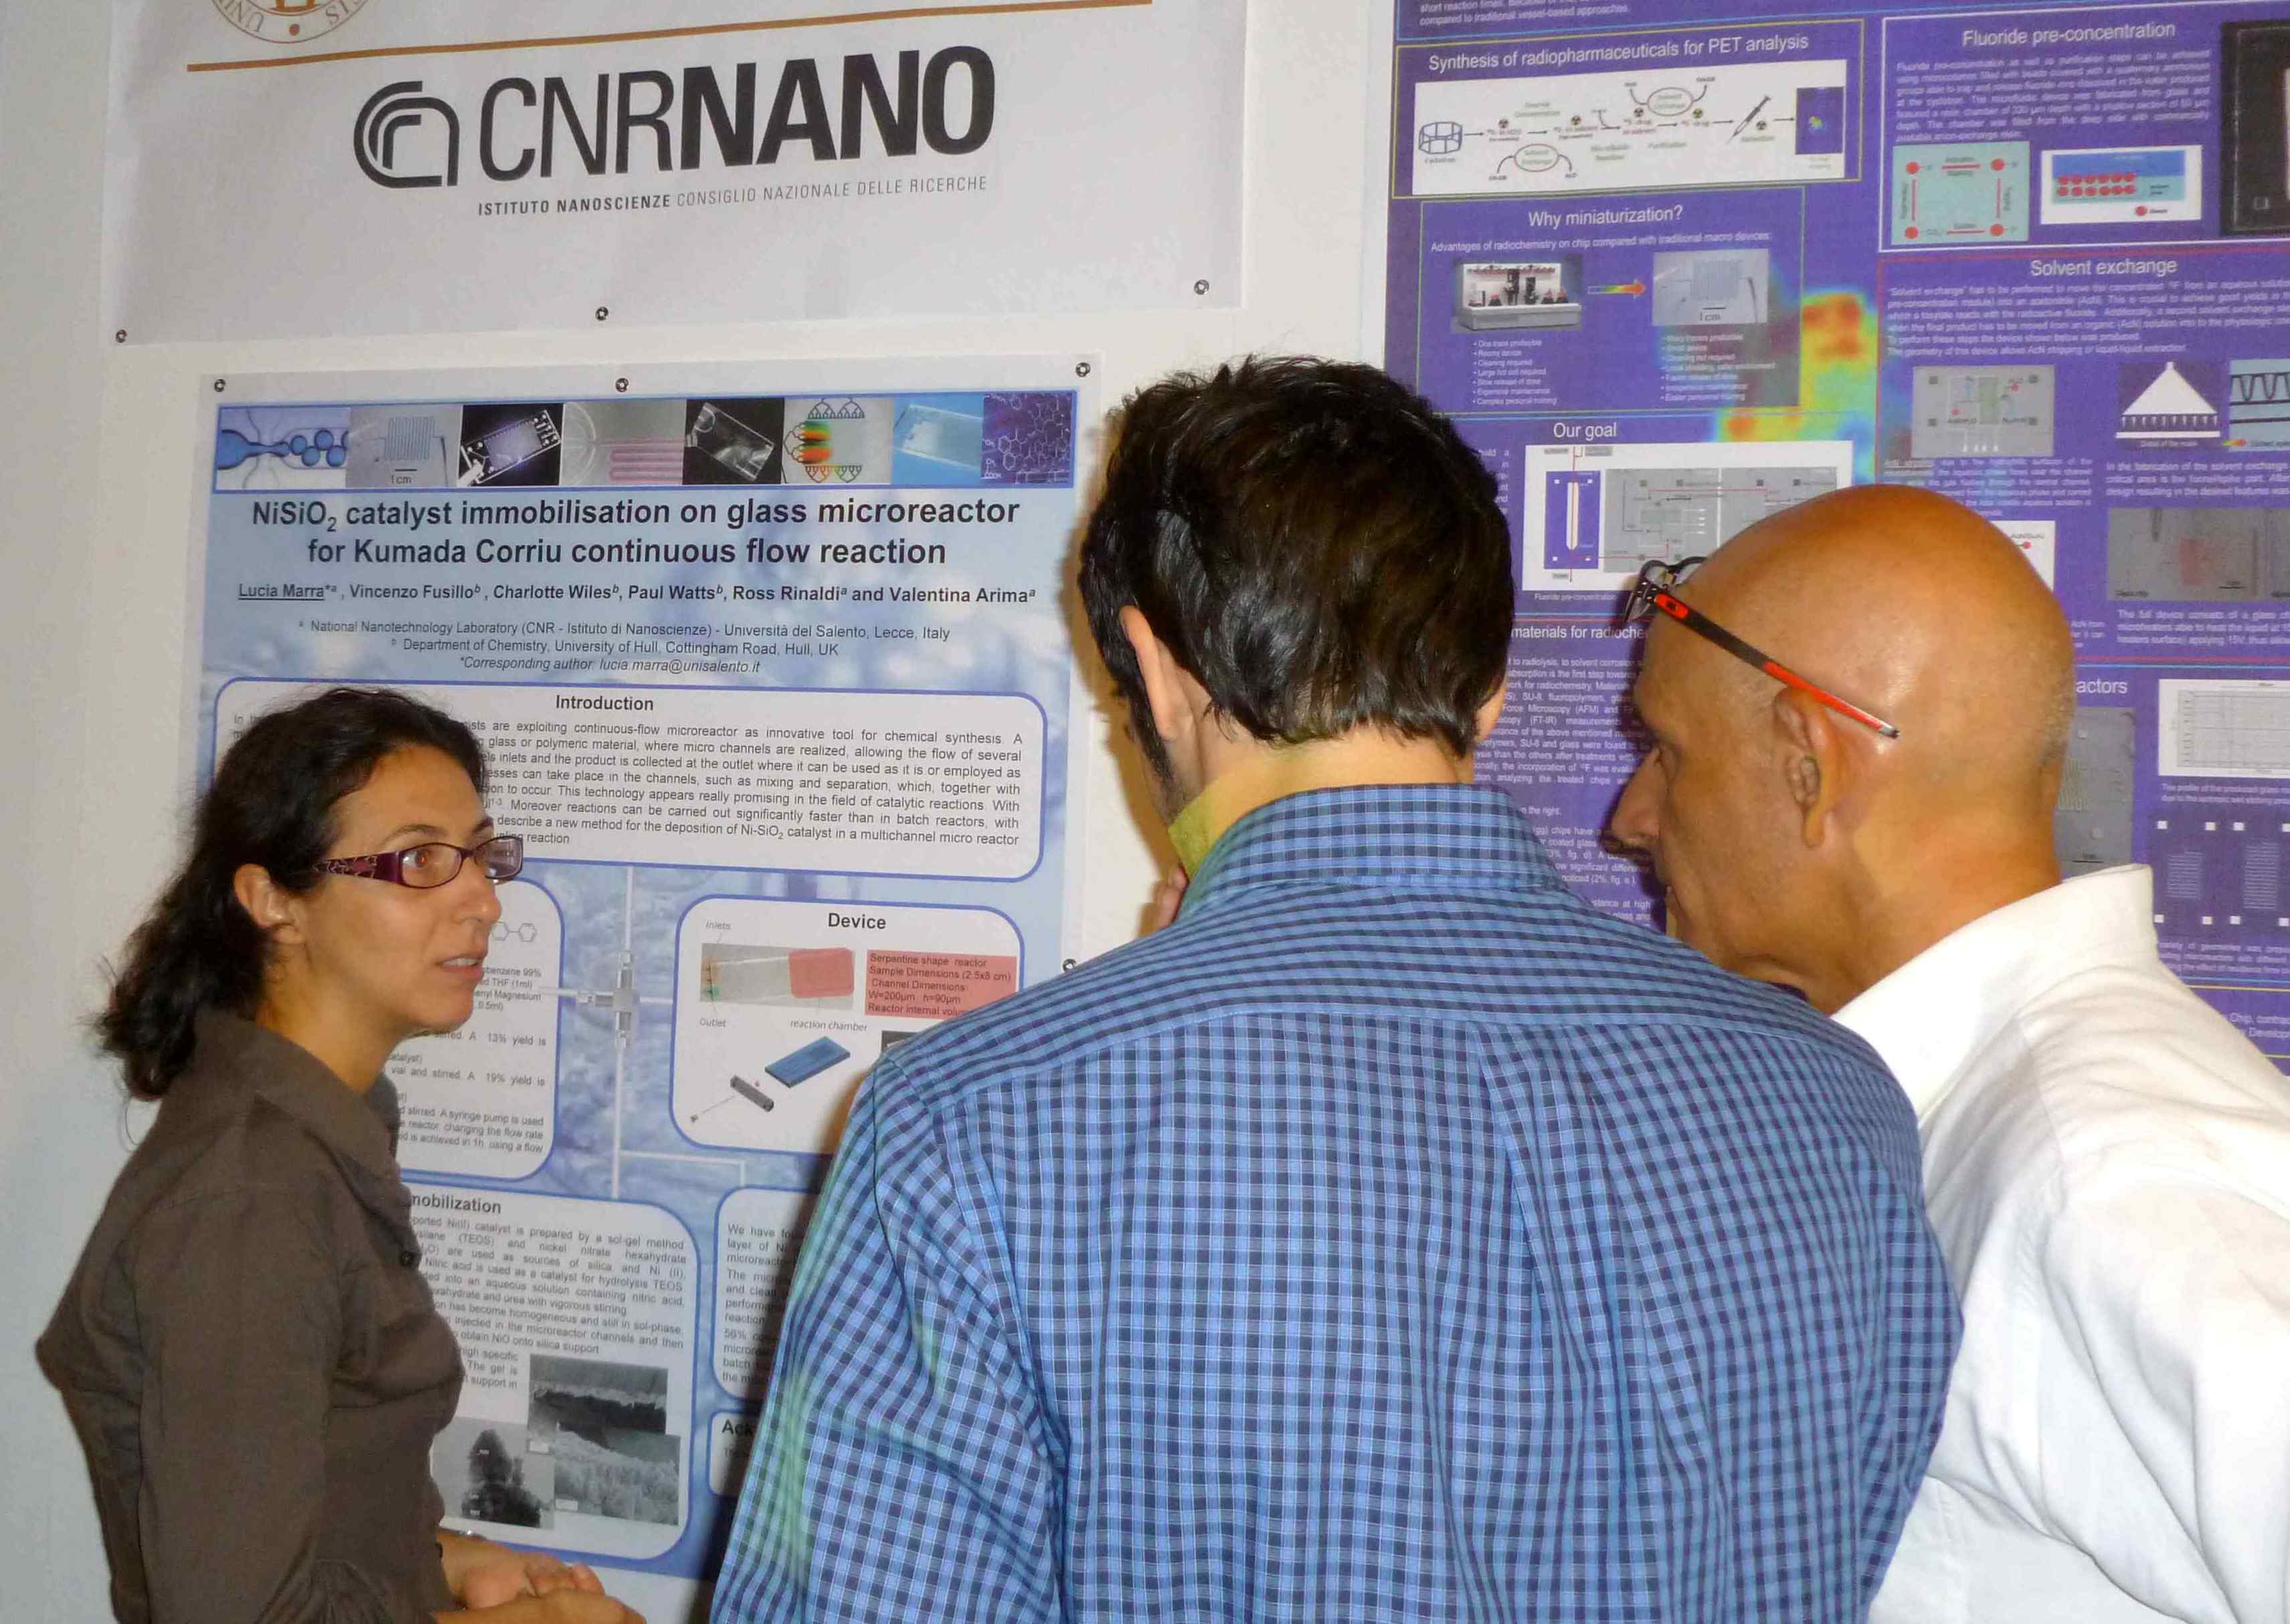 CNRNANO participates in the Notte dei ricercatori, in Lecce